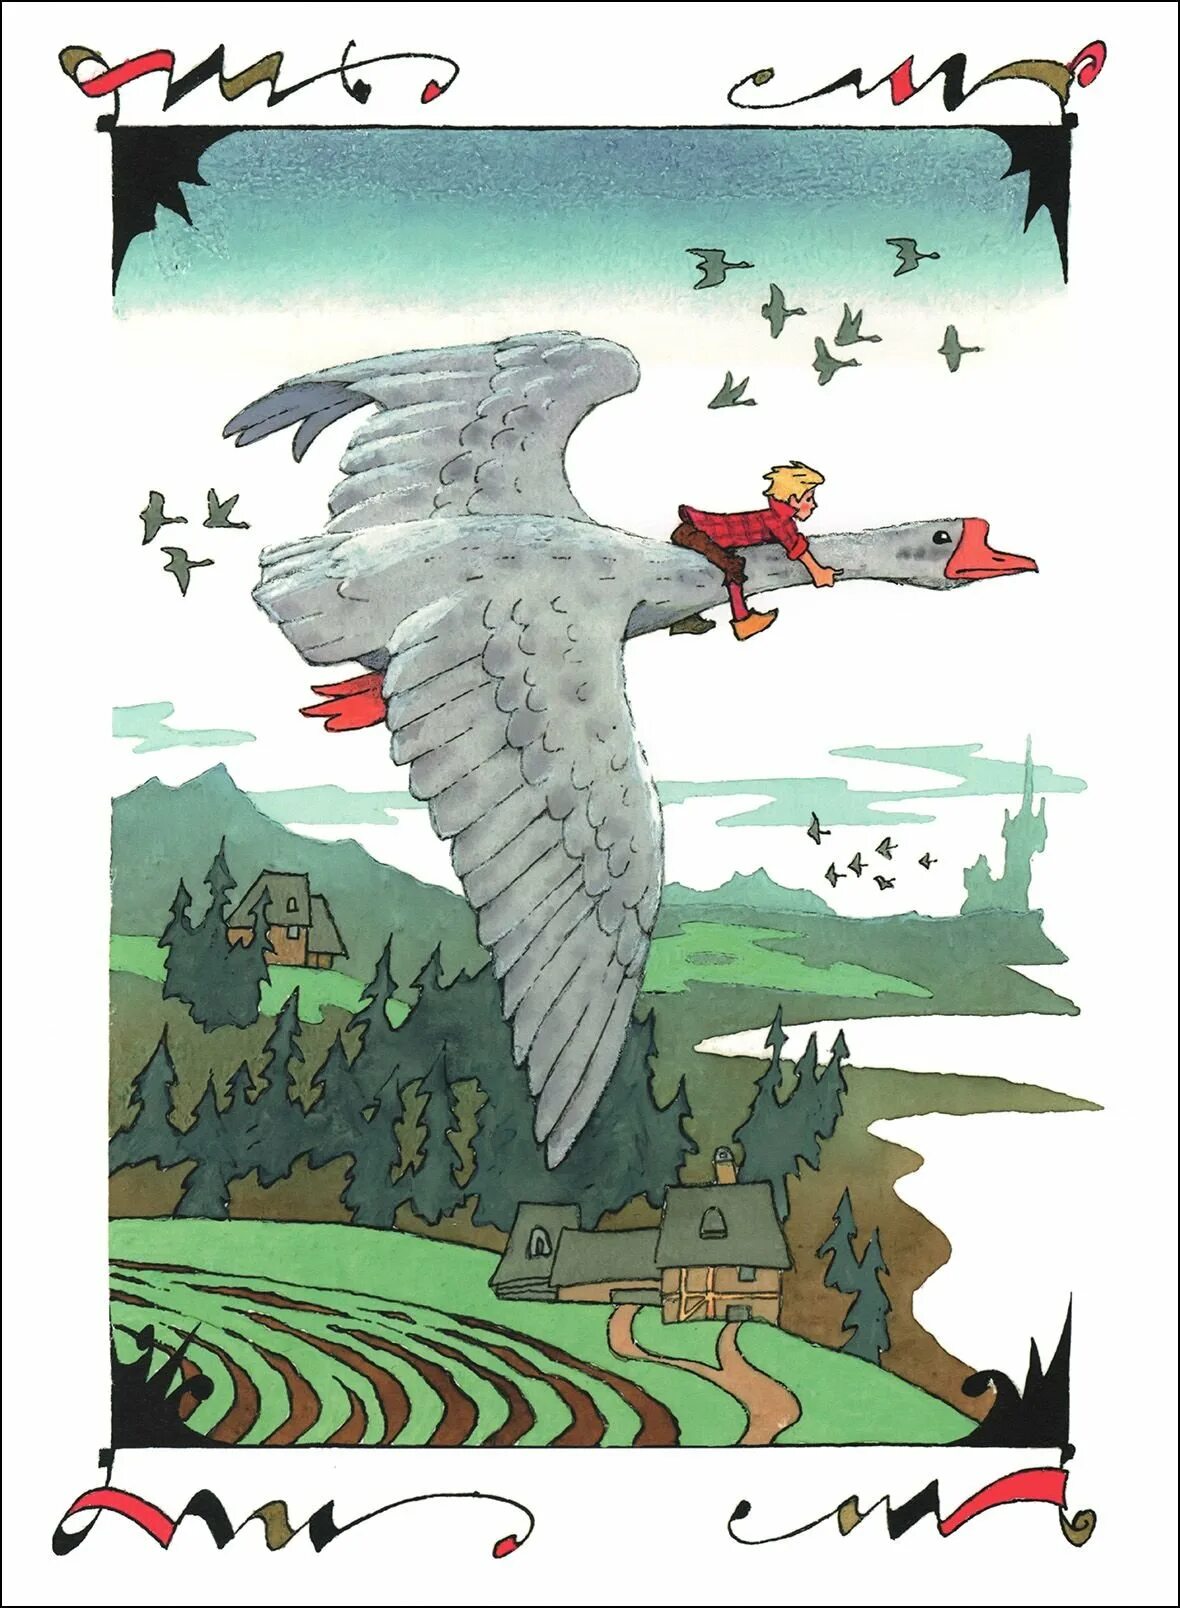 Иллюстрации Лагерлеф сказочное путешествие Нильса с дикими гусями. С.лагерлёф чудесное путешествие Нильса с дикими гусями иллюстрации. Удивительное путешествие нильса с дикими